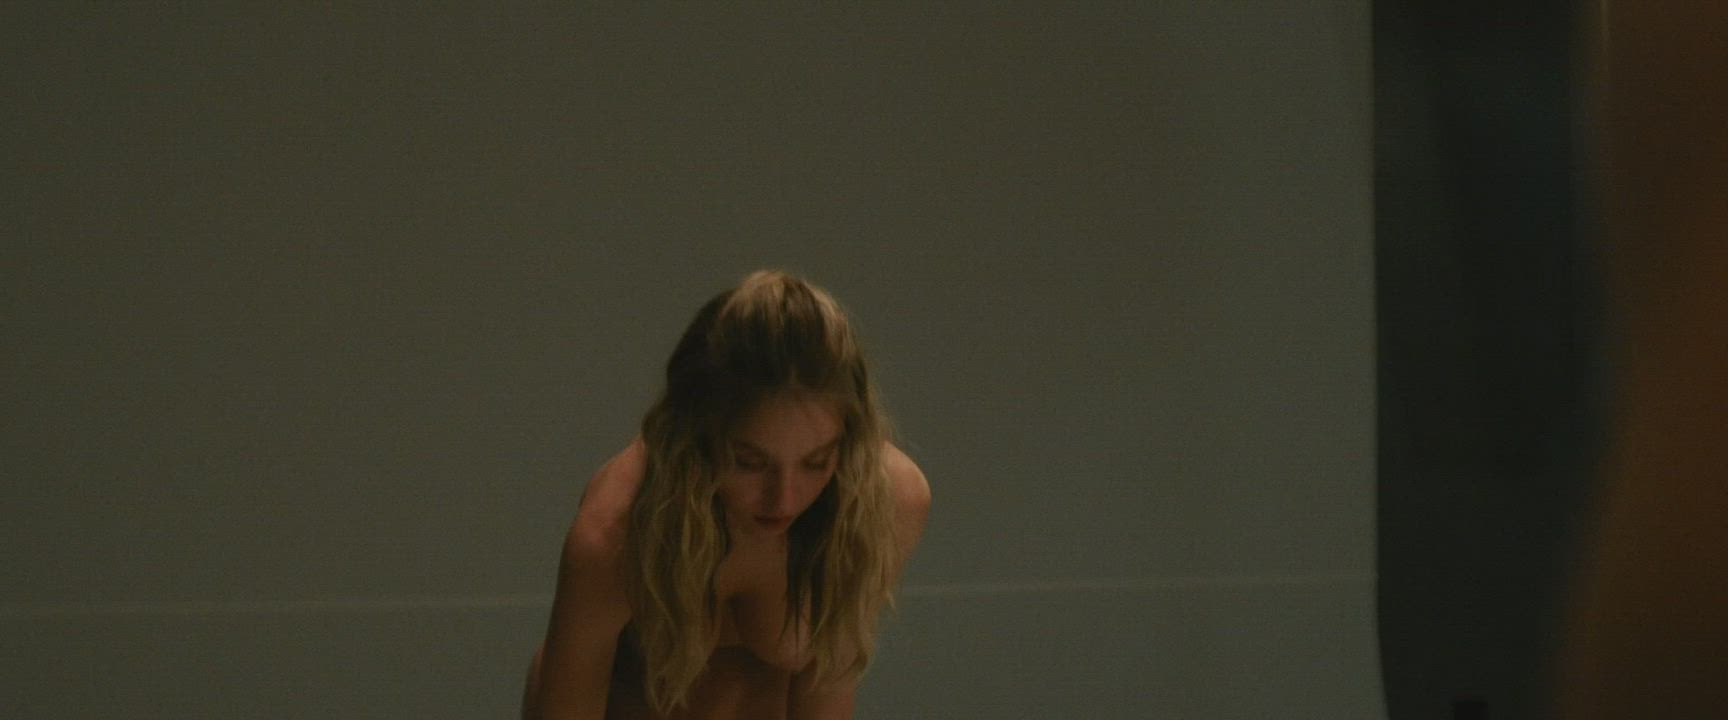 Sydney Sweeney and her amazing boobies